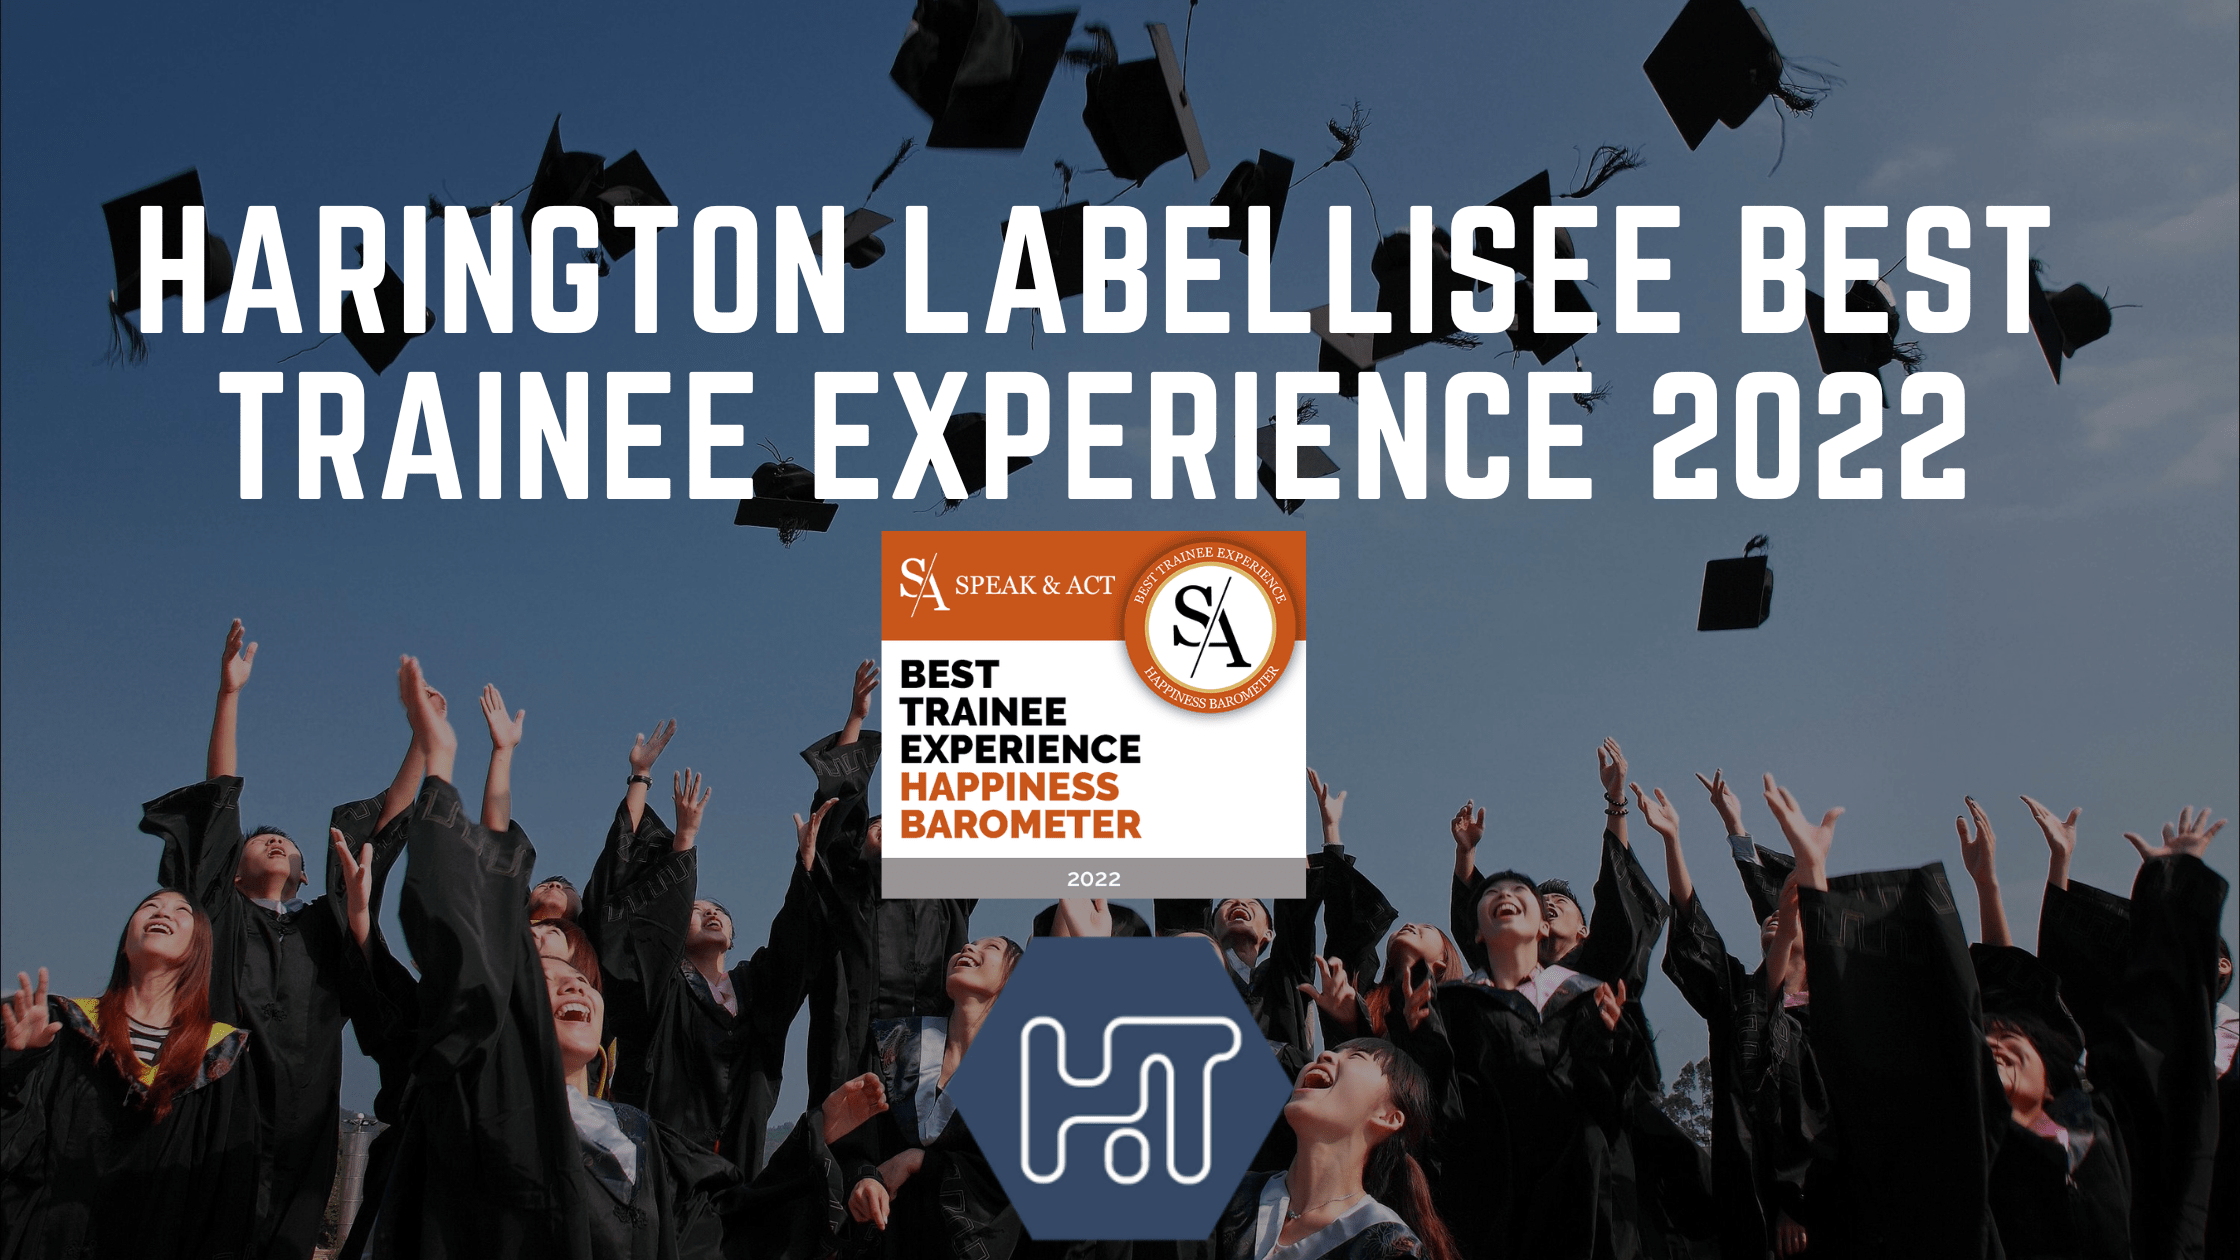 Harington, labellisé Best Trainee Experience 2022 par Speak & Act